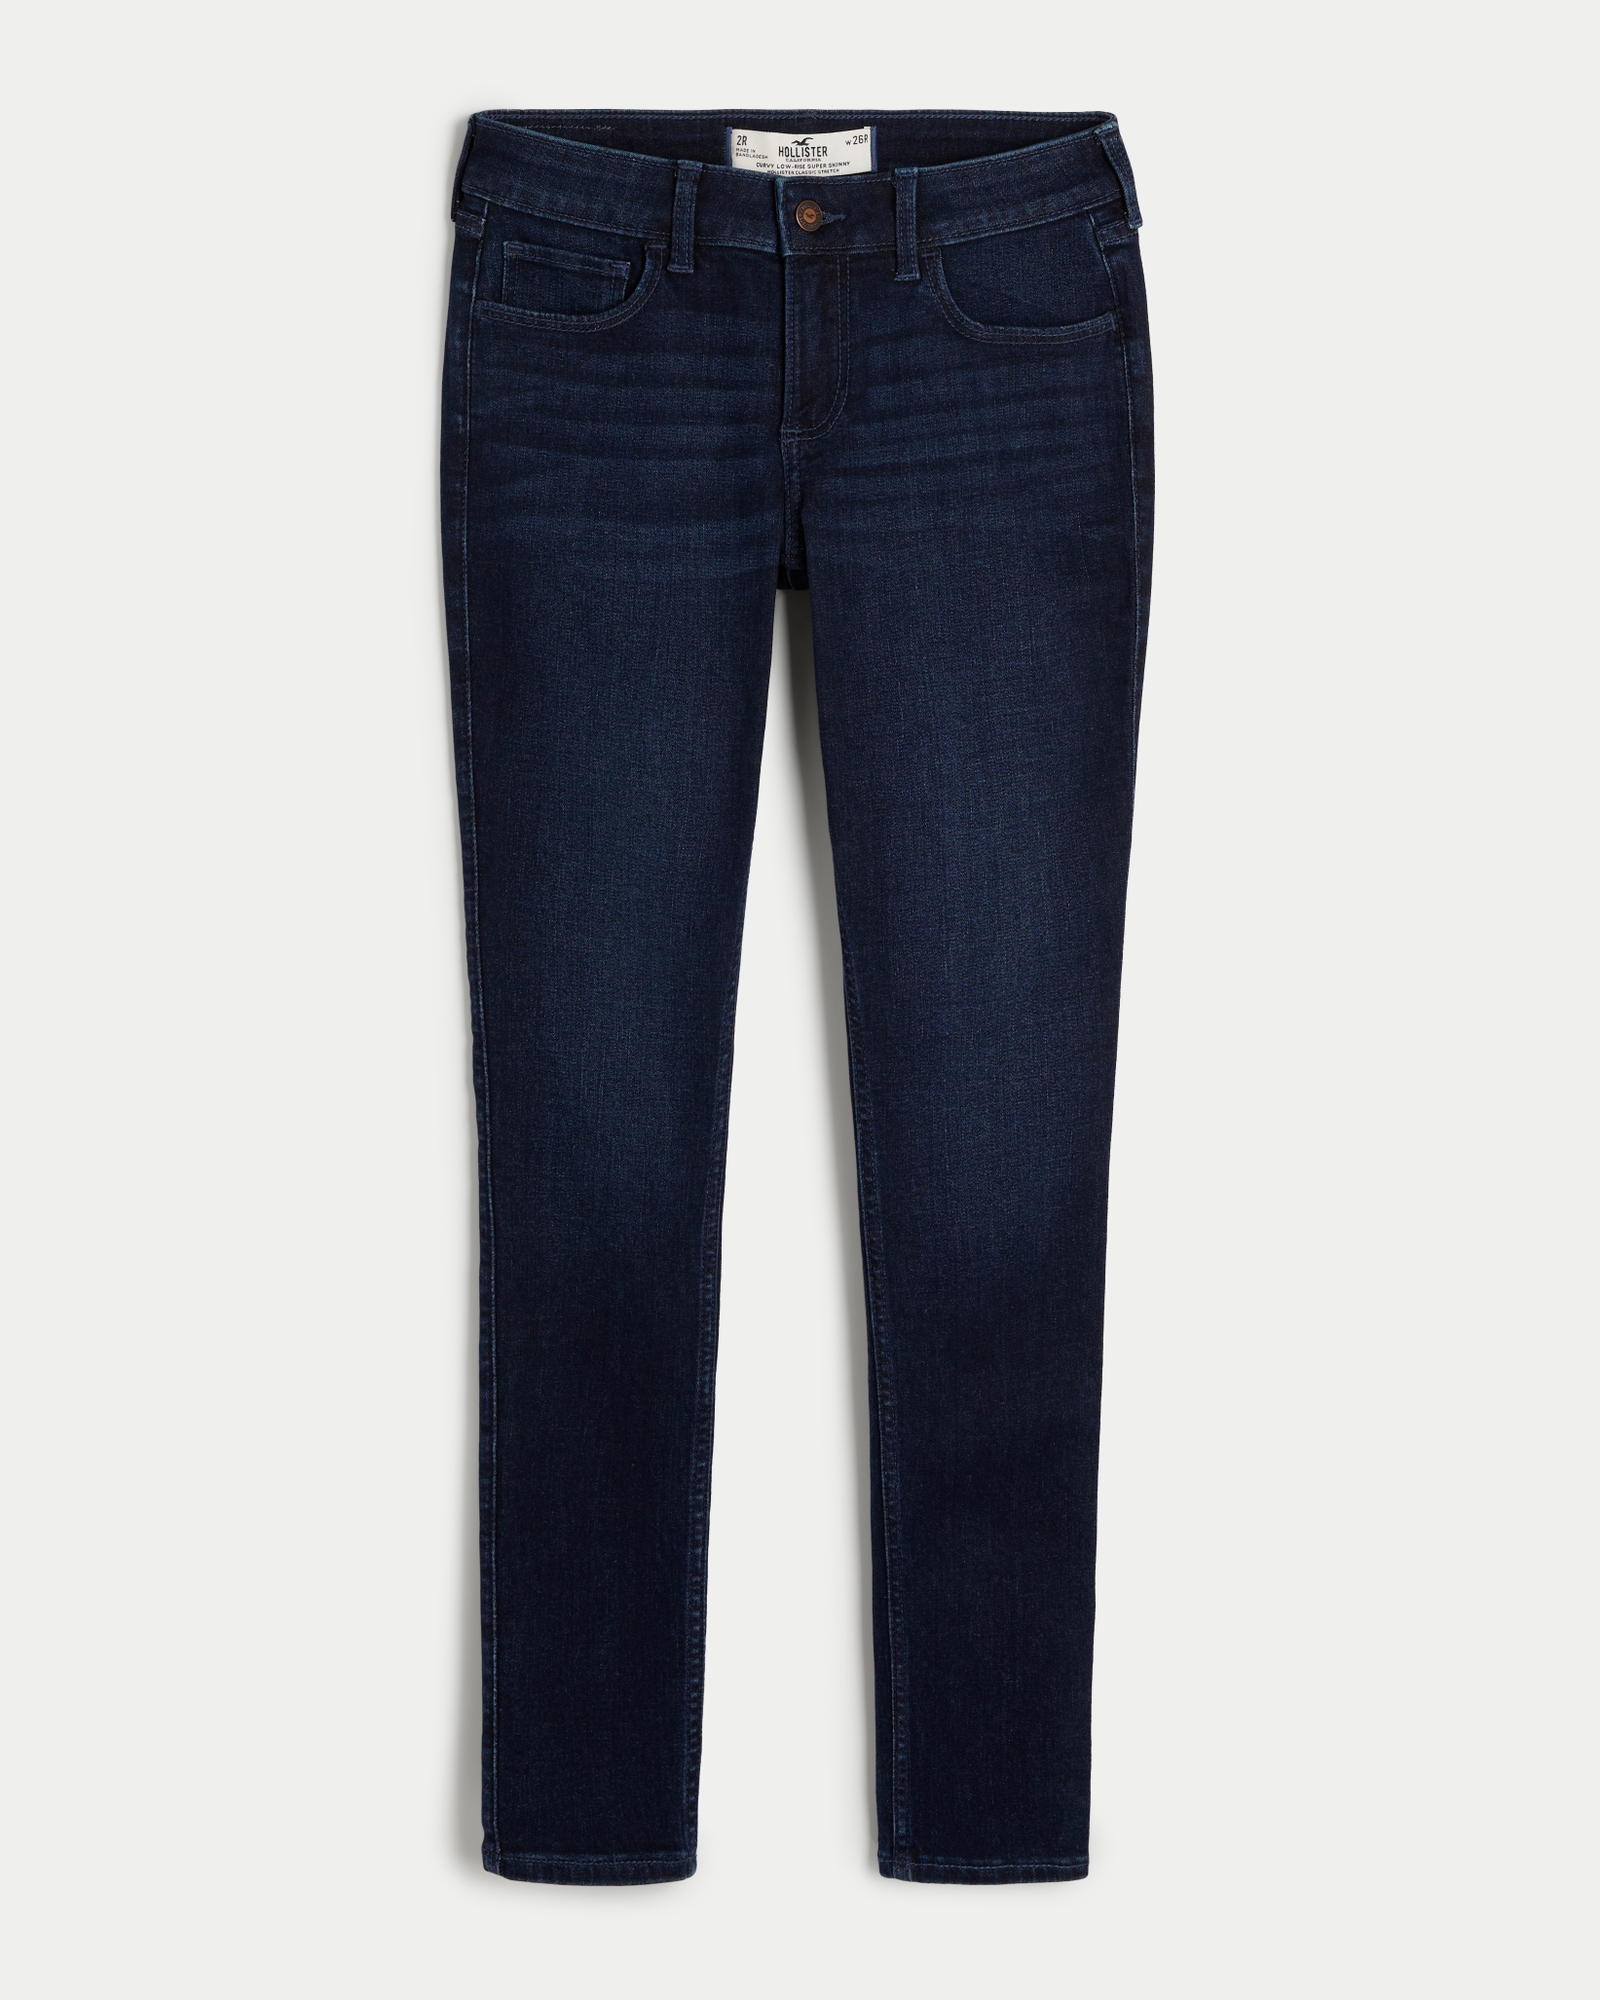 Hollister High-Rise Super Skinny Classic Stretch Dark Wash Jeans Denim 25 1  S